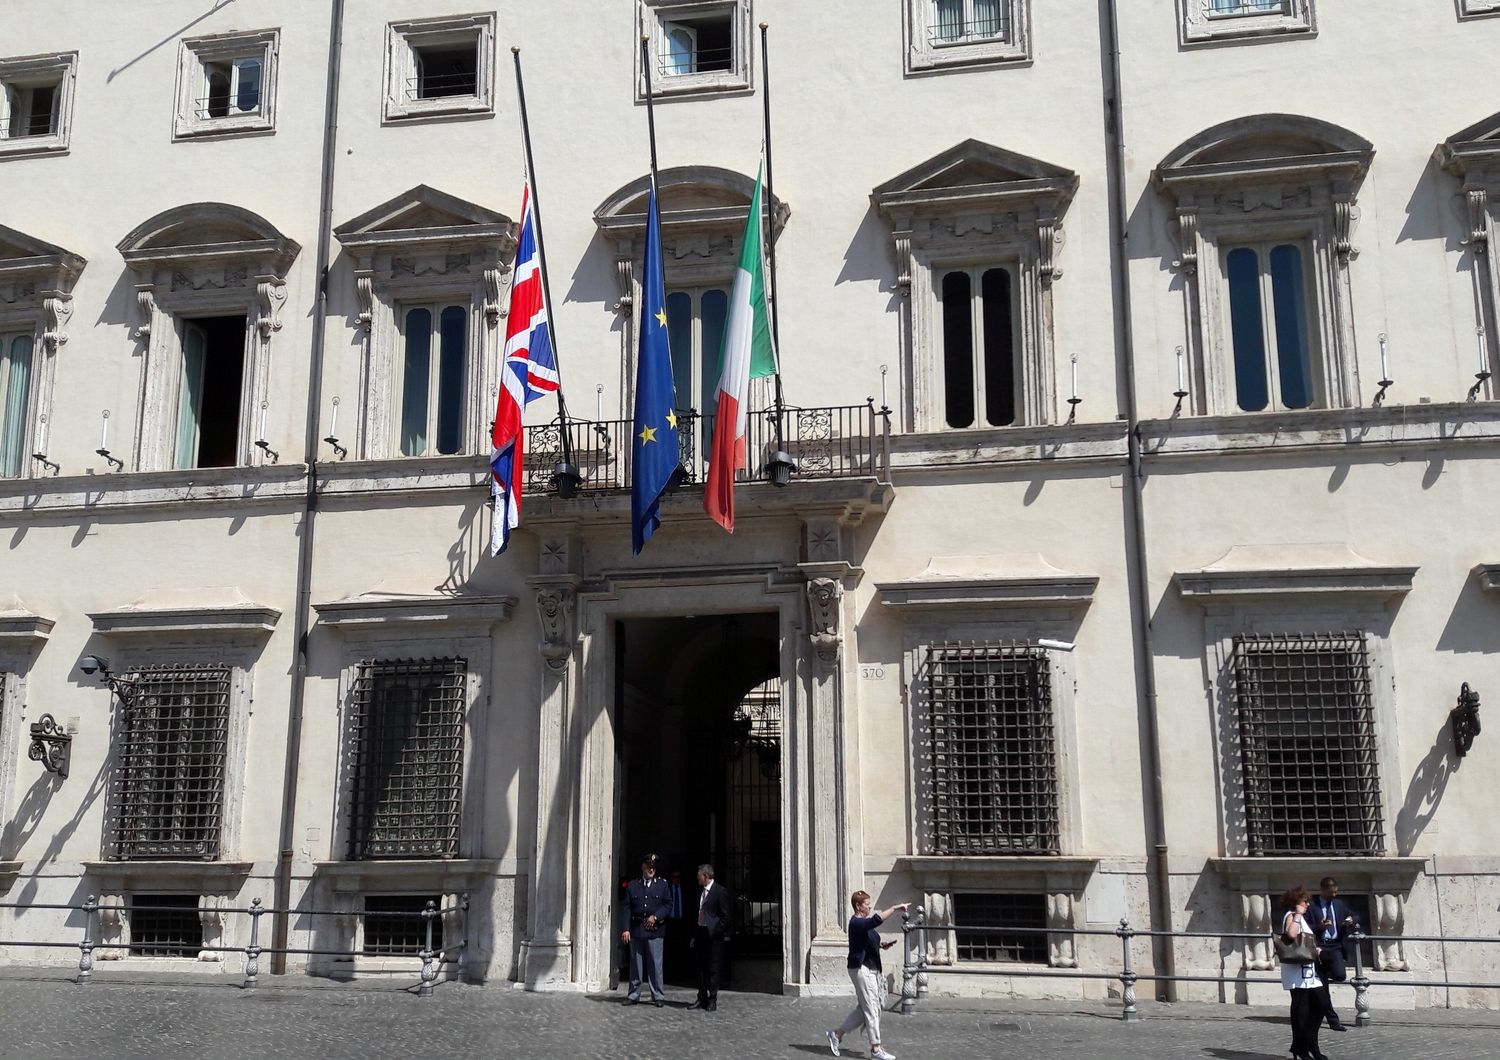 La bandiera della Gran Bretagna a mezz'asta è stata esposta sulla facciata di Palazzo Chigi accanto al Tricolore e alla bandiera dell'Unione europea. Il governo italiano testimonia anche così la solidarietà per l'attentato di Manchester.